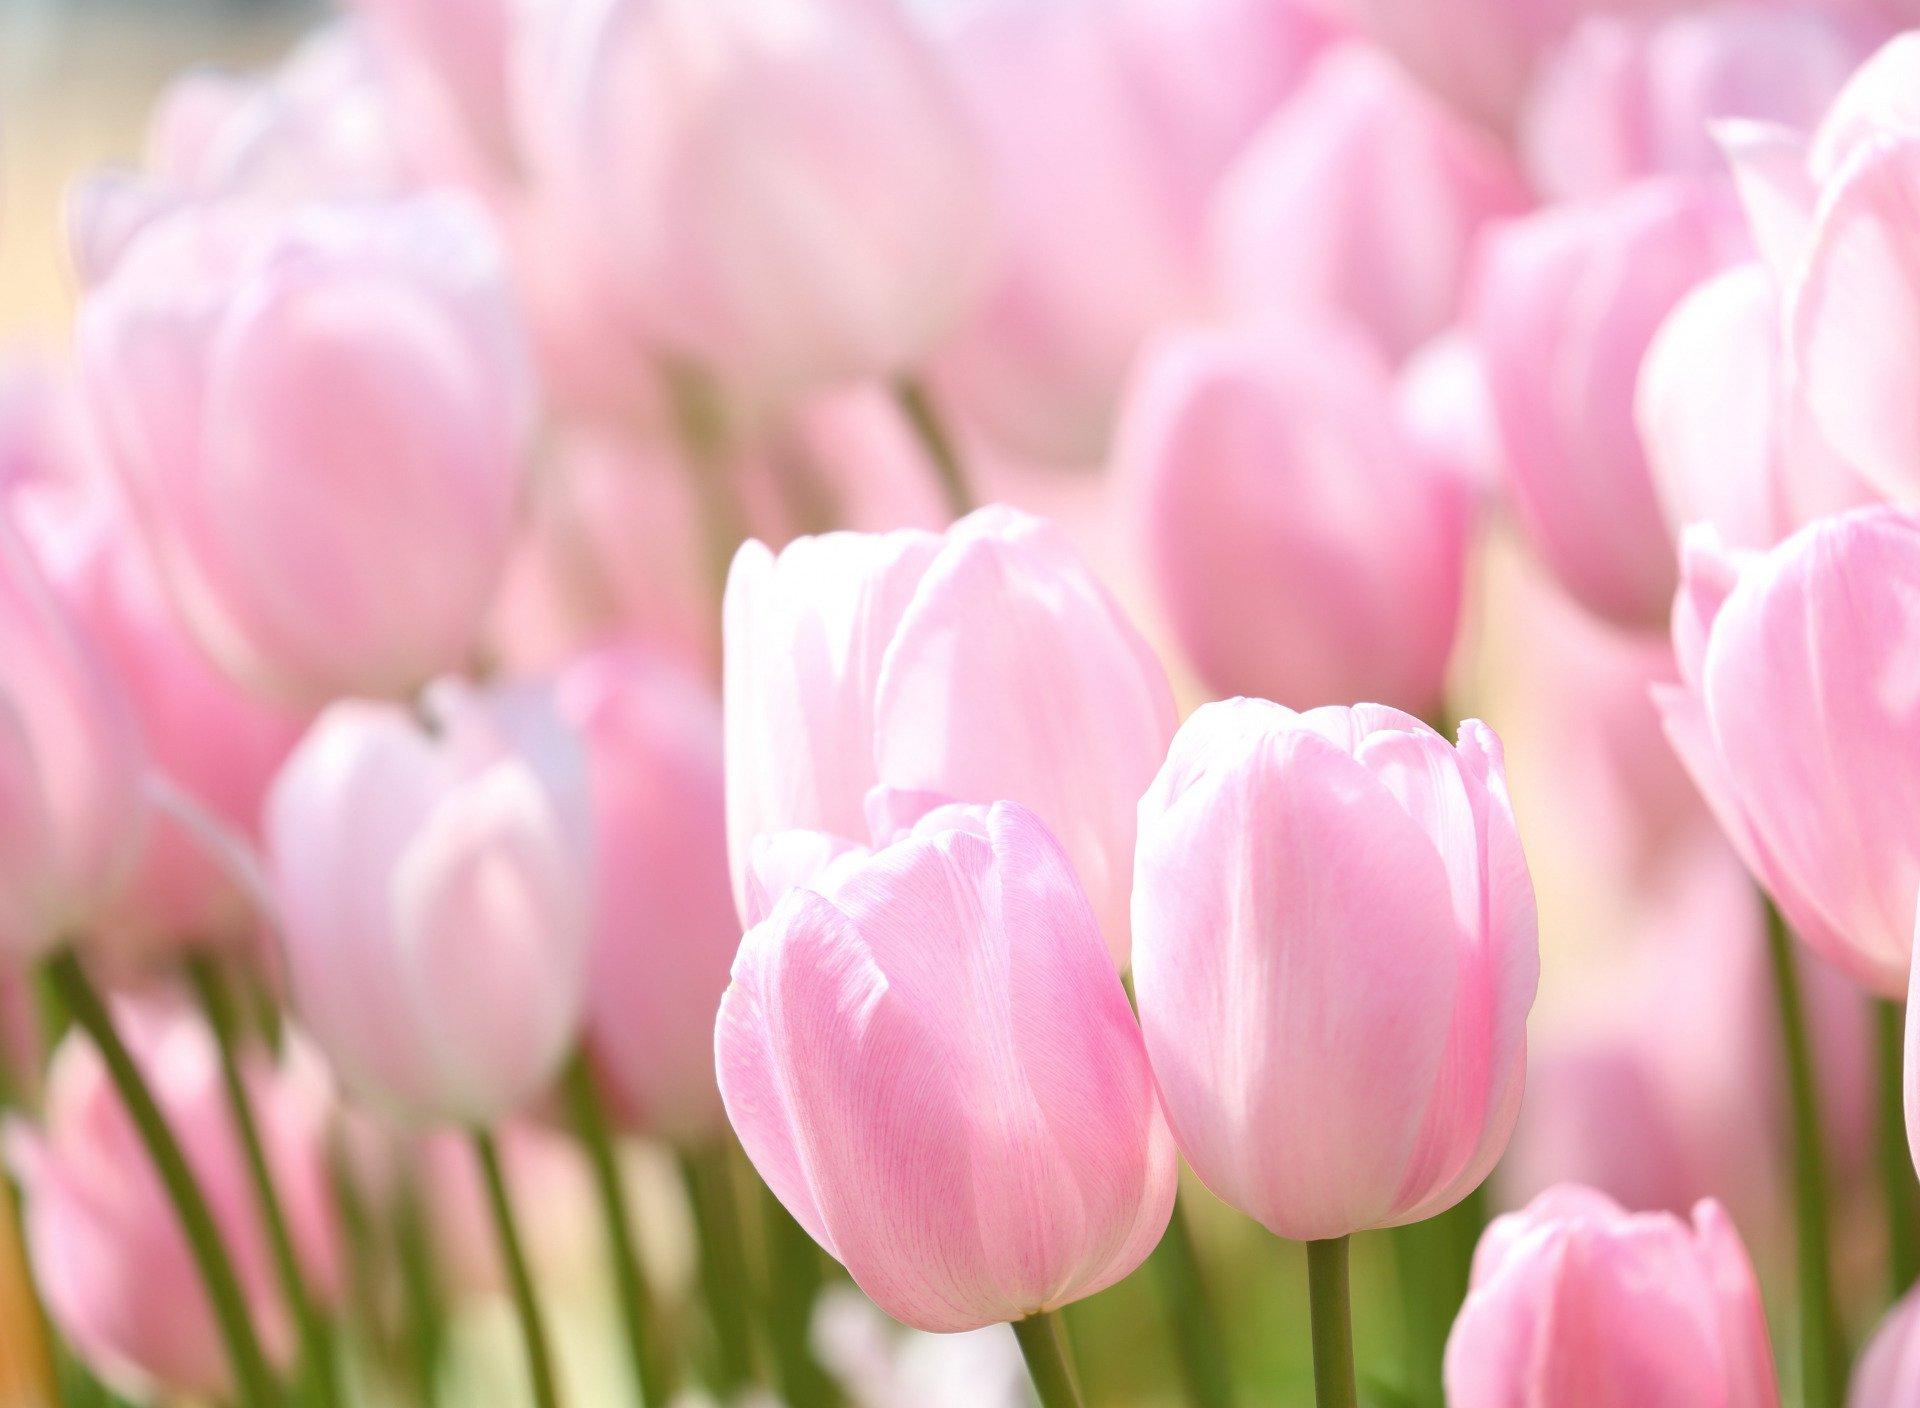 бесплатное фото: Тюльпан, цветок, Блум, розовый, Цветы, Весна, Природа |  Hippopx